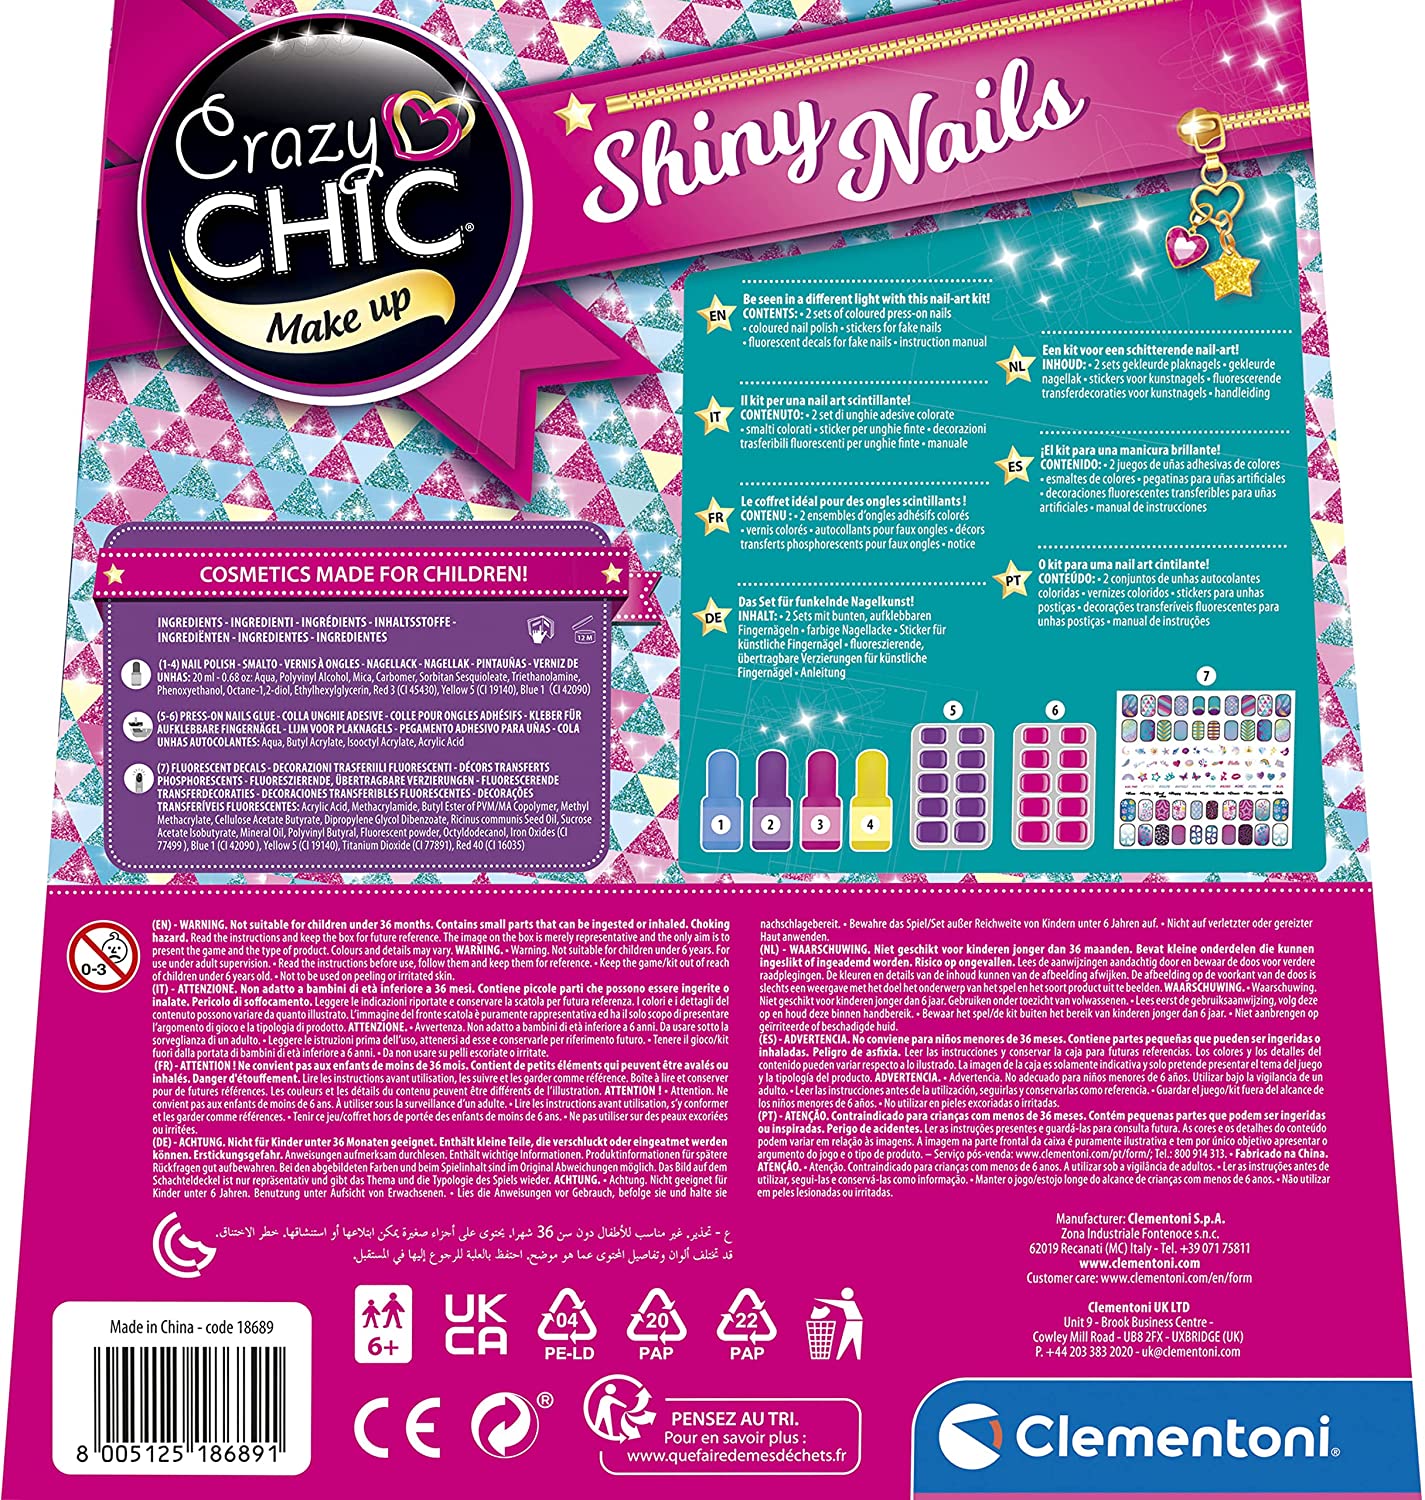 Clementoni - Crazy Chic - Shiny Nails - Kit finte, Set Bambina 6 Anni  Decora Unghie Fluorescenti, Trousse smalti, Regalo per Man